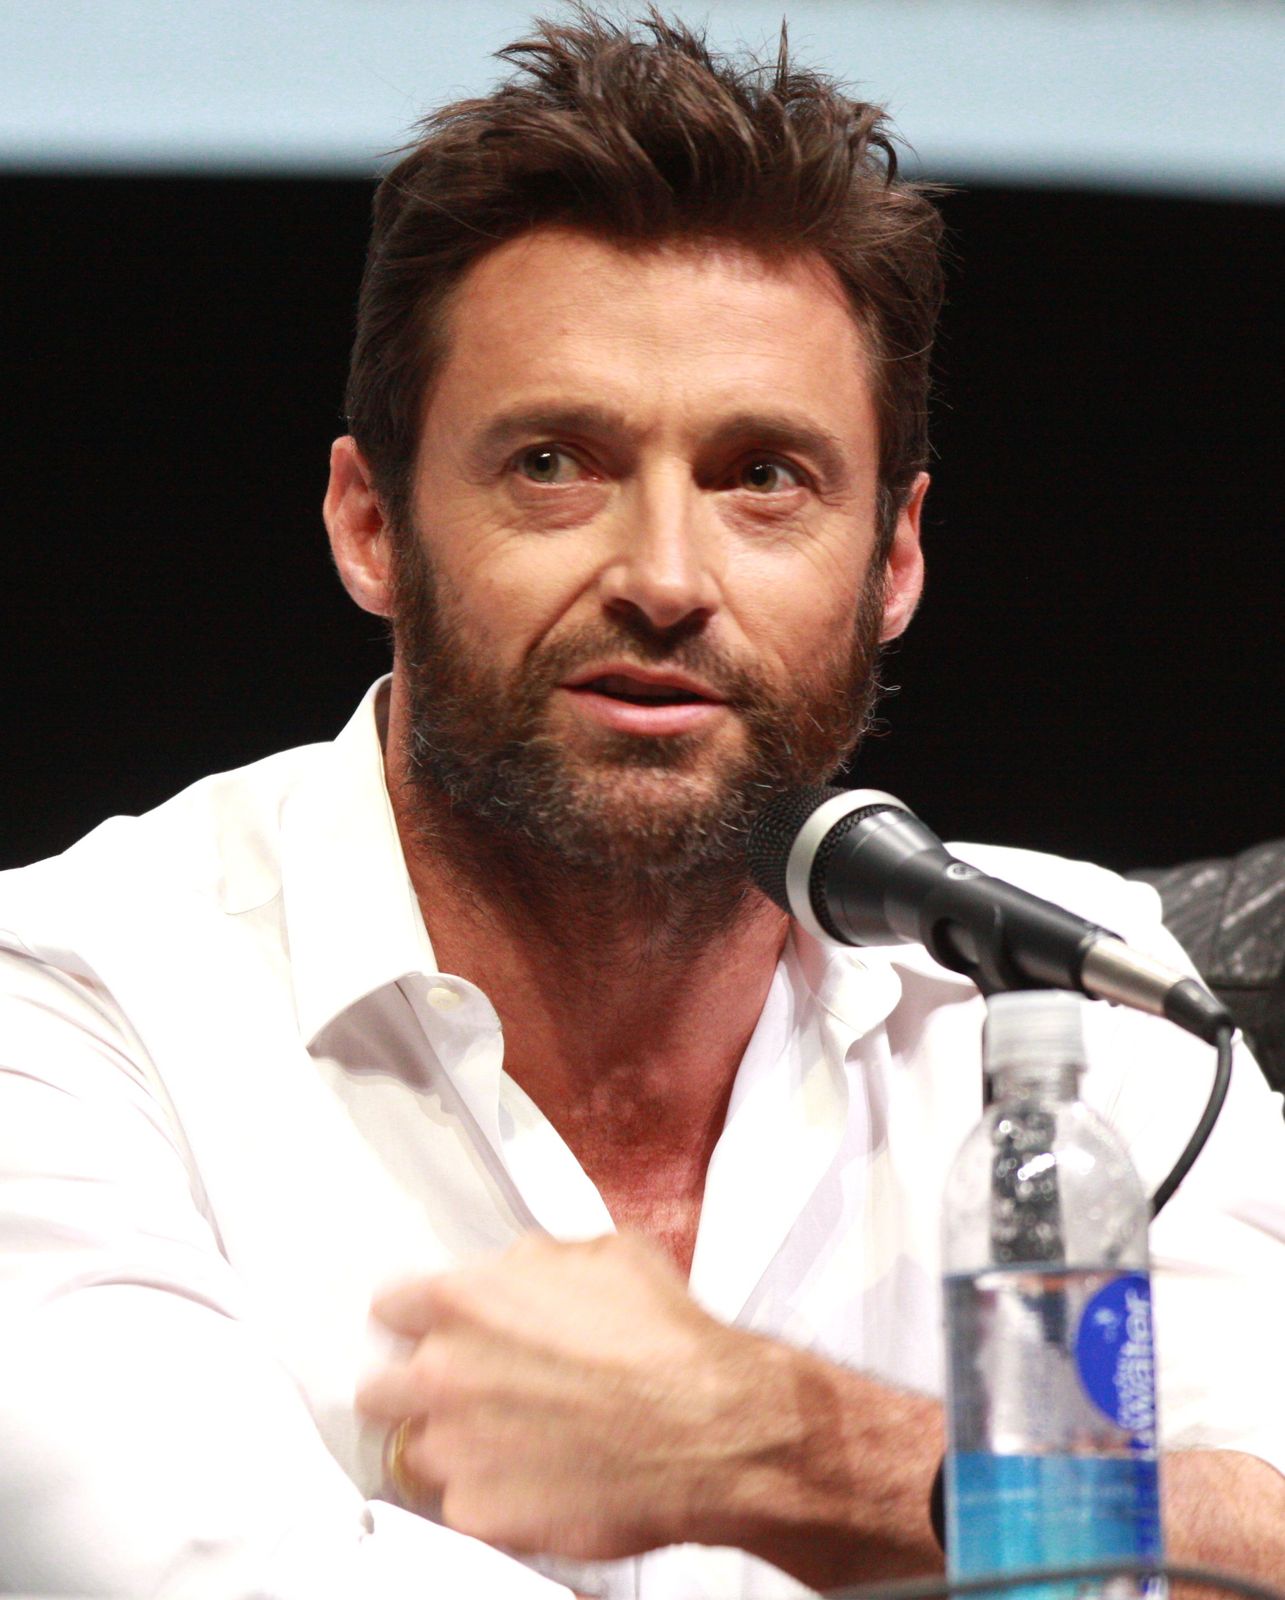 Hugh Jackman confirms Wolverine 3 as his last X-Men movie